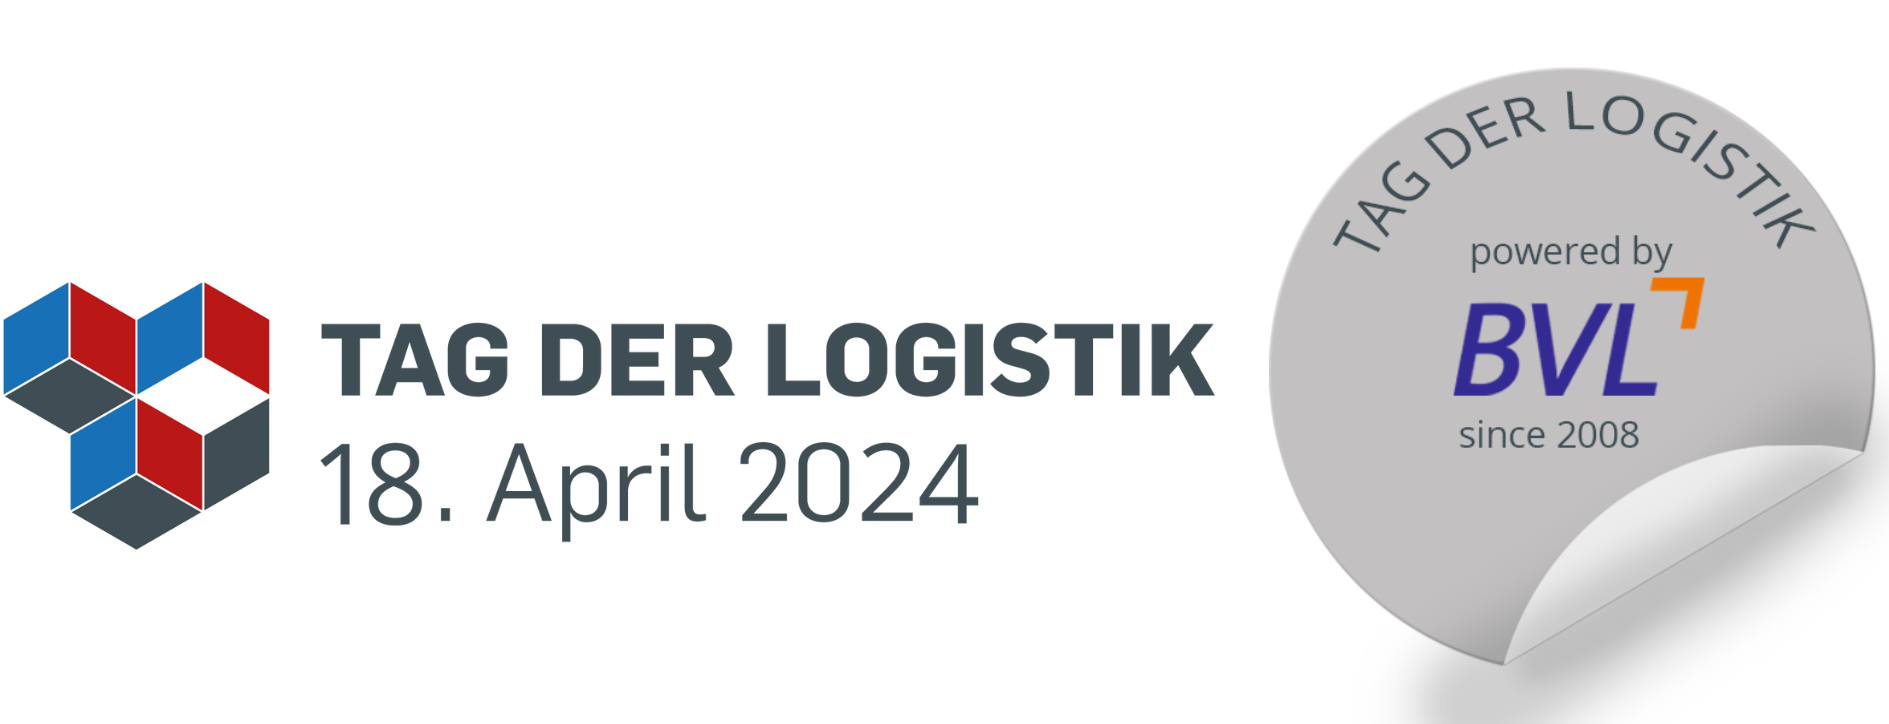 Tag der Logistik 2022